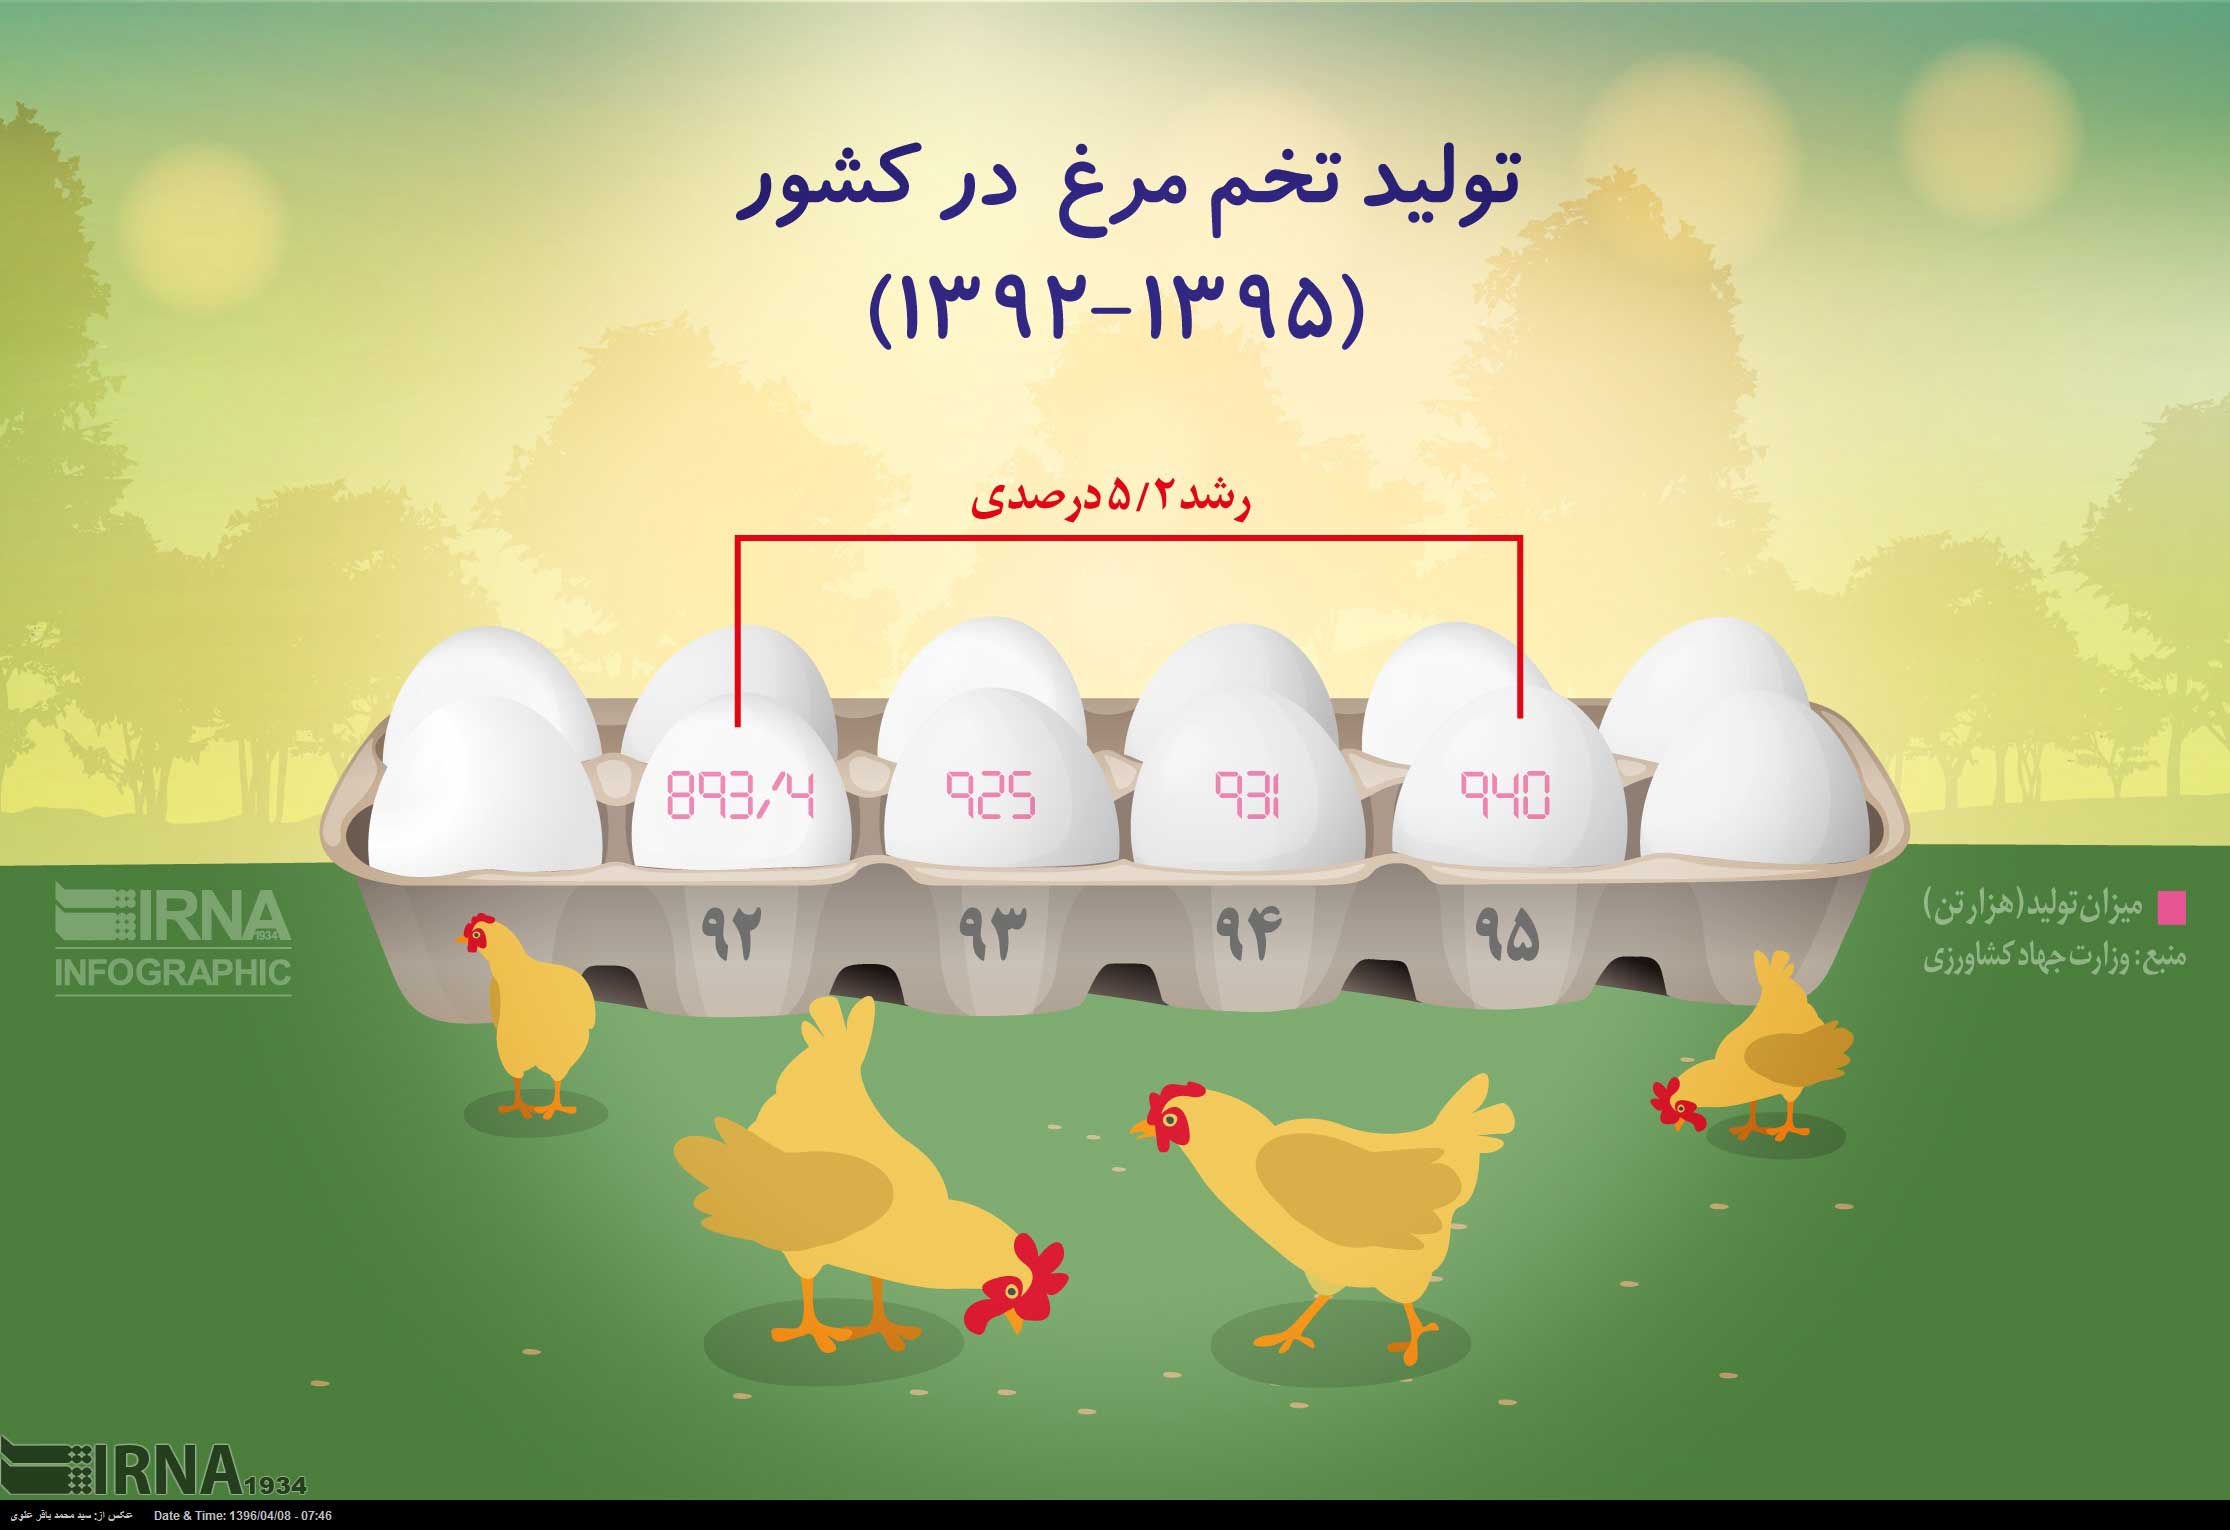 تولید تخم مرغ در کشور (1395-1392)